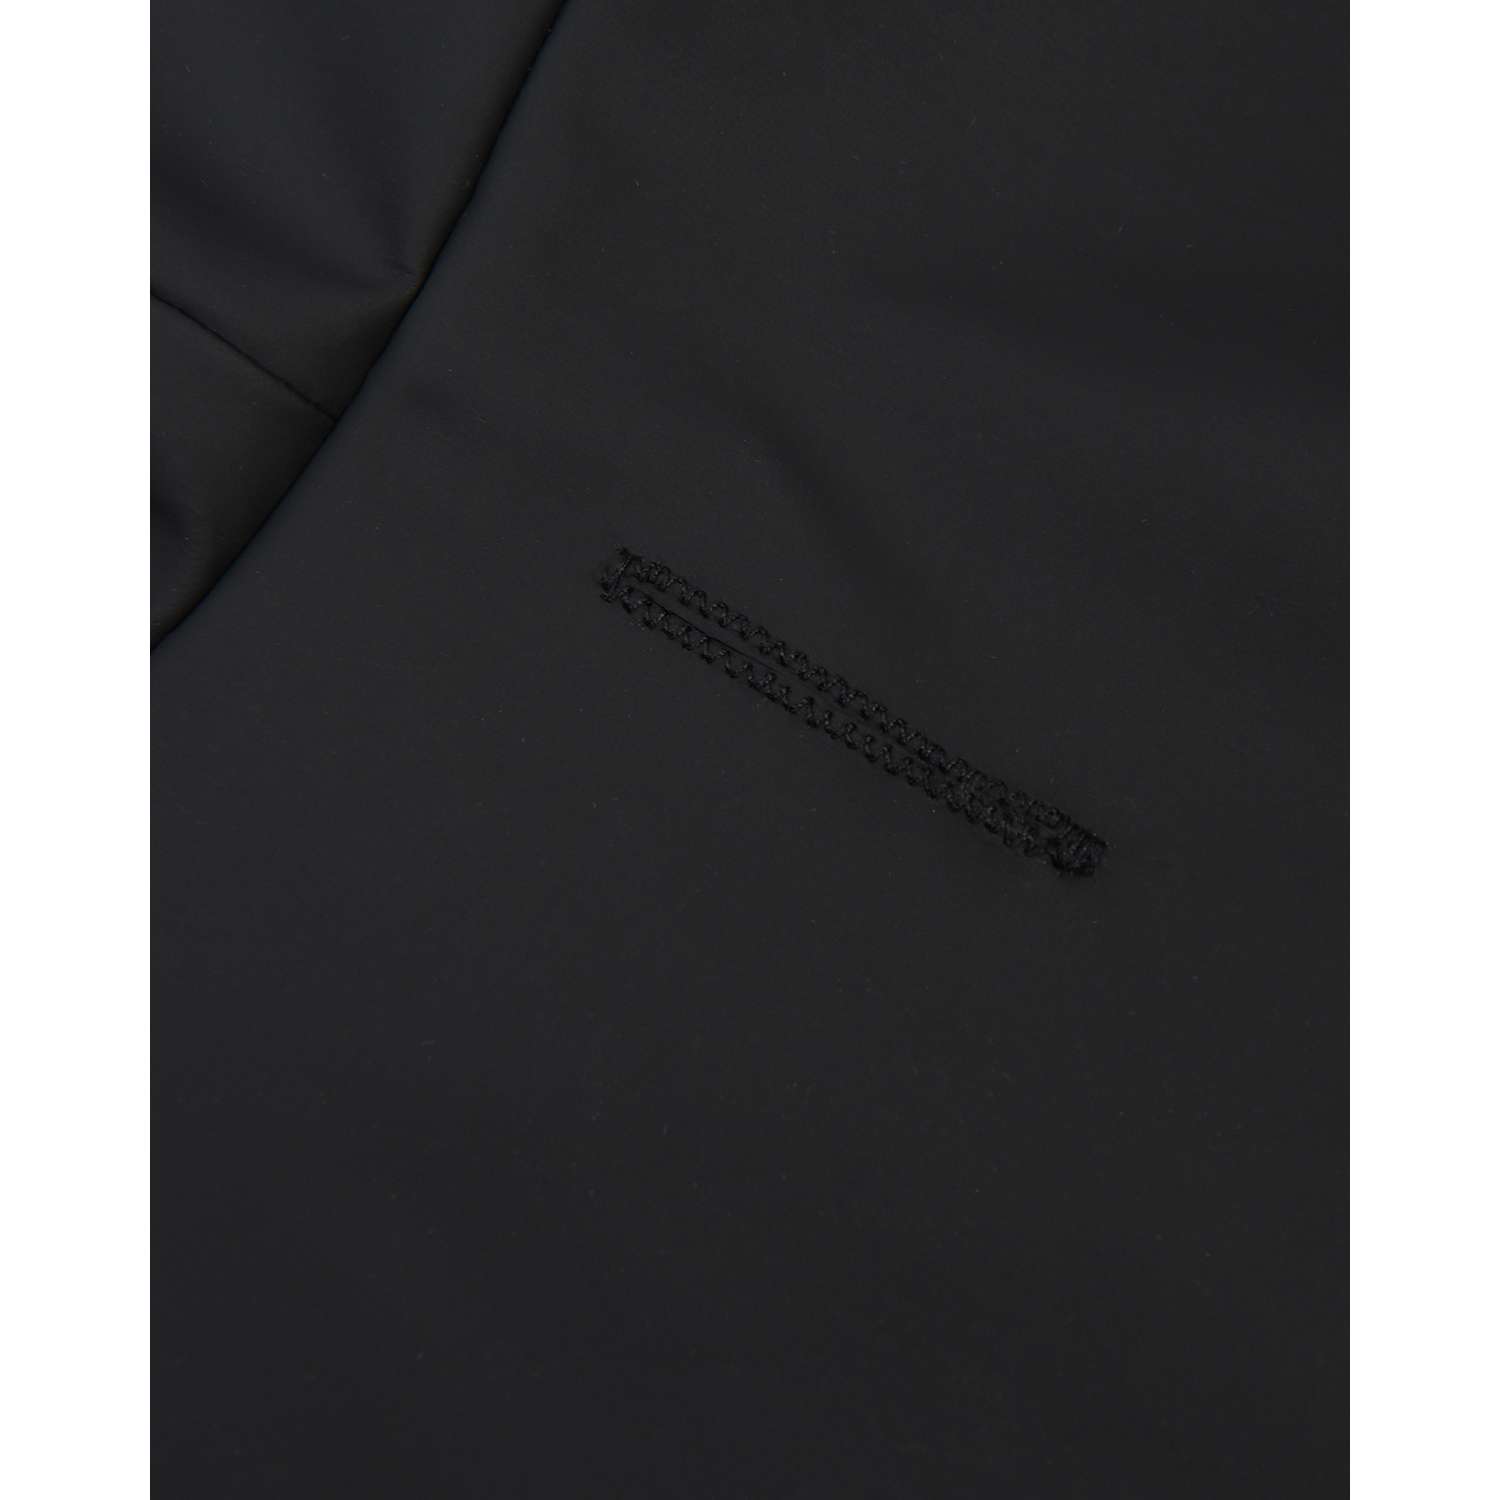 Дождевик-куртка для собак Zoozavr чёрный 65 - фото 6